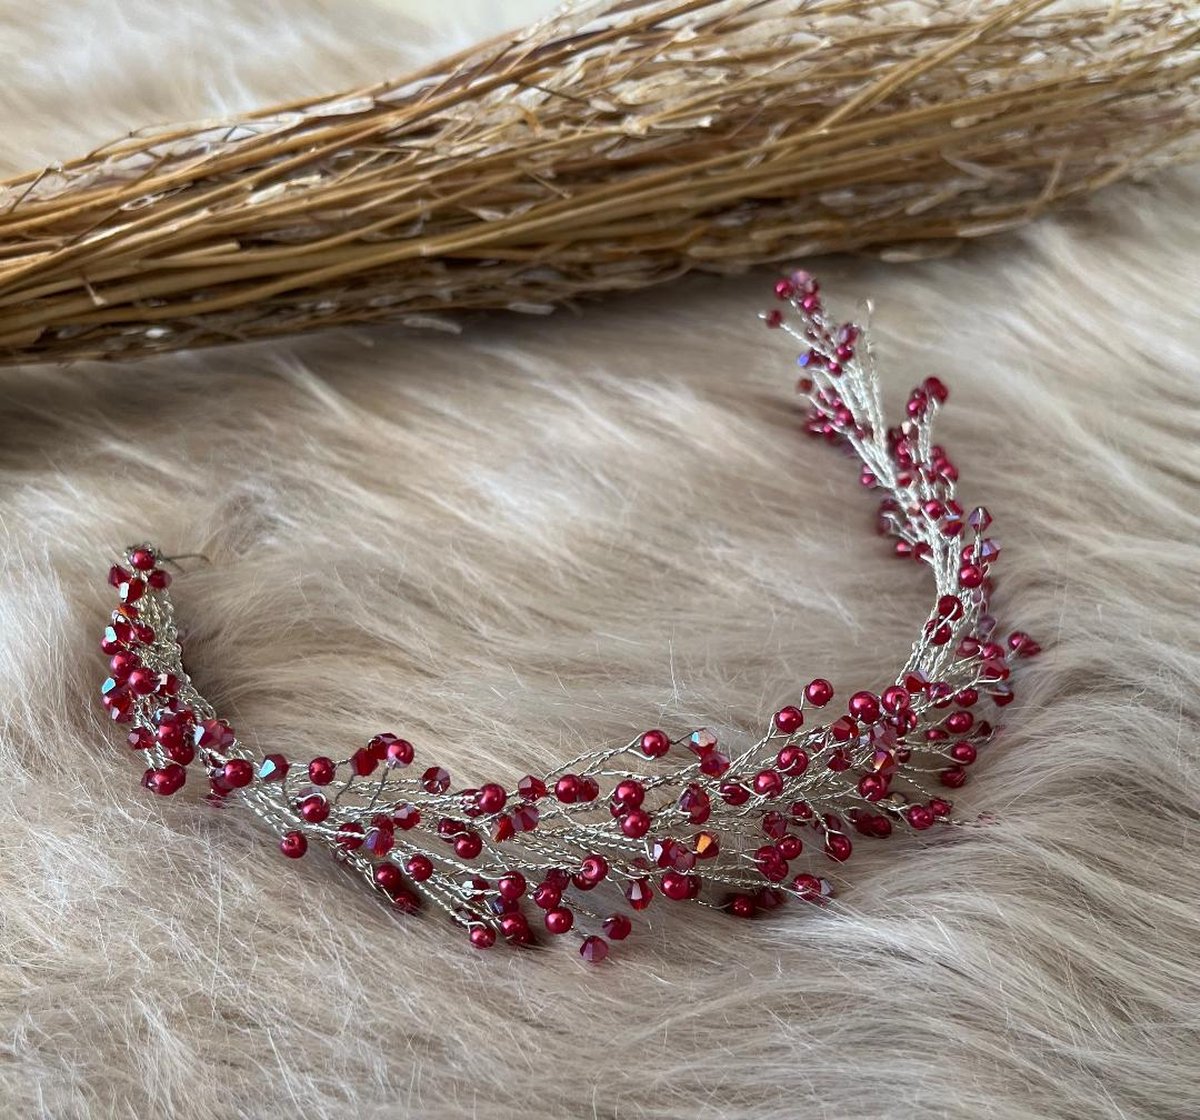 haarband - hoofdband- haarstreng-diadeem-handgemaakte bruidsaccessoires-steentjes kristallen-bruiloft-kerstmis-nieuwjaar-bruidsmeisje-trouwfeest-fotoshoot-rood bordeaux - Merkloos